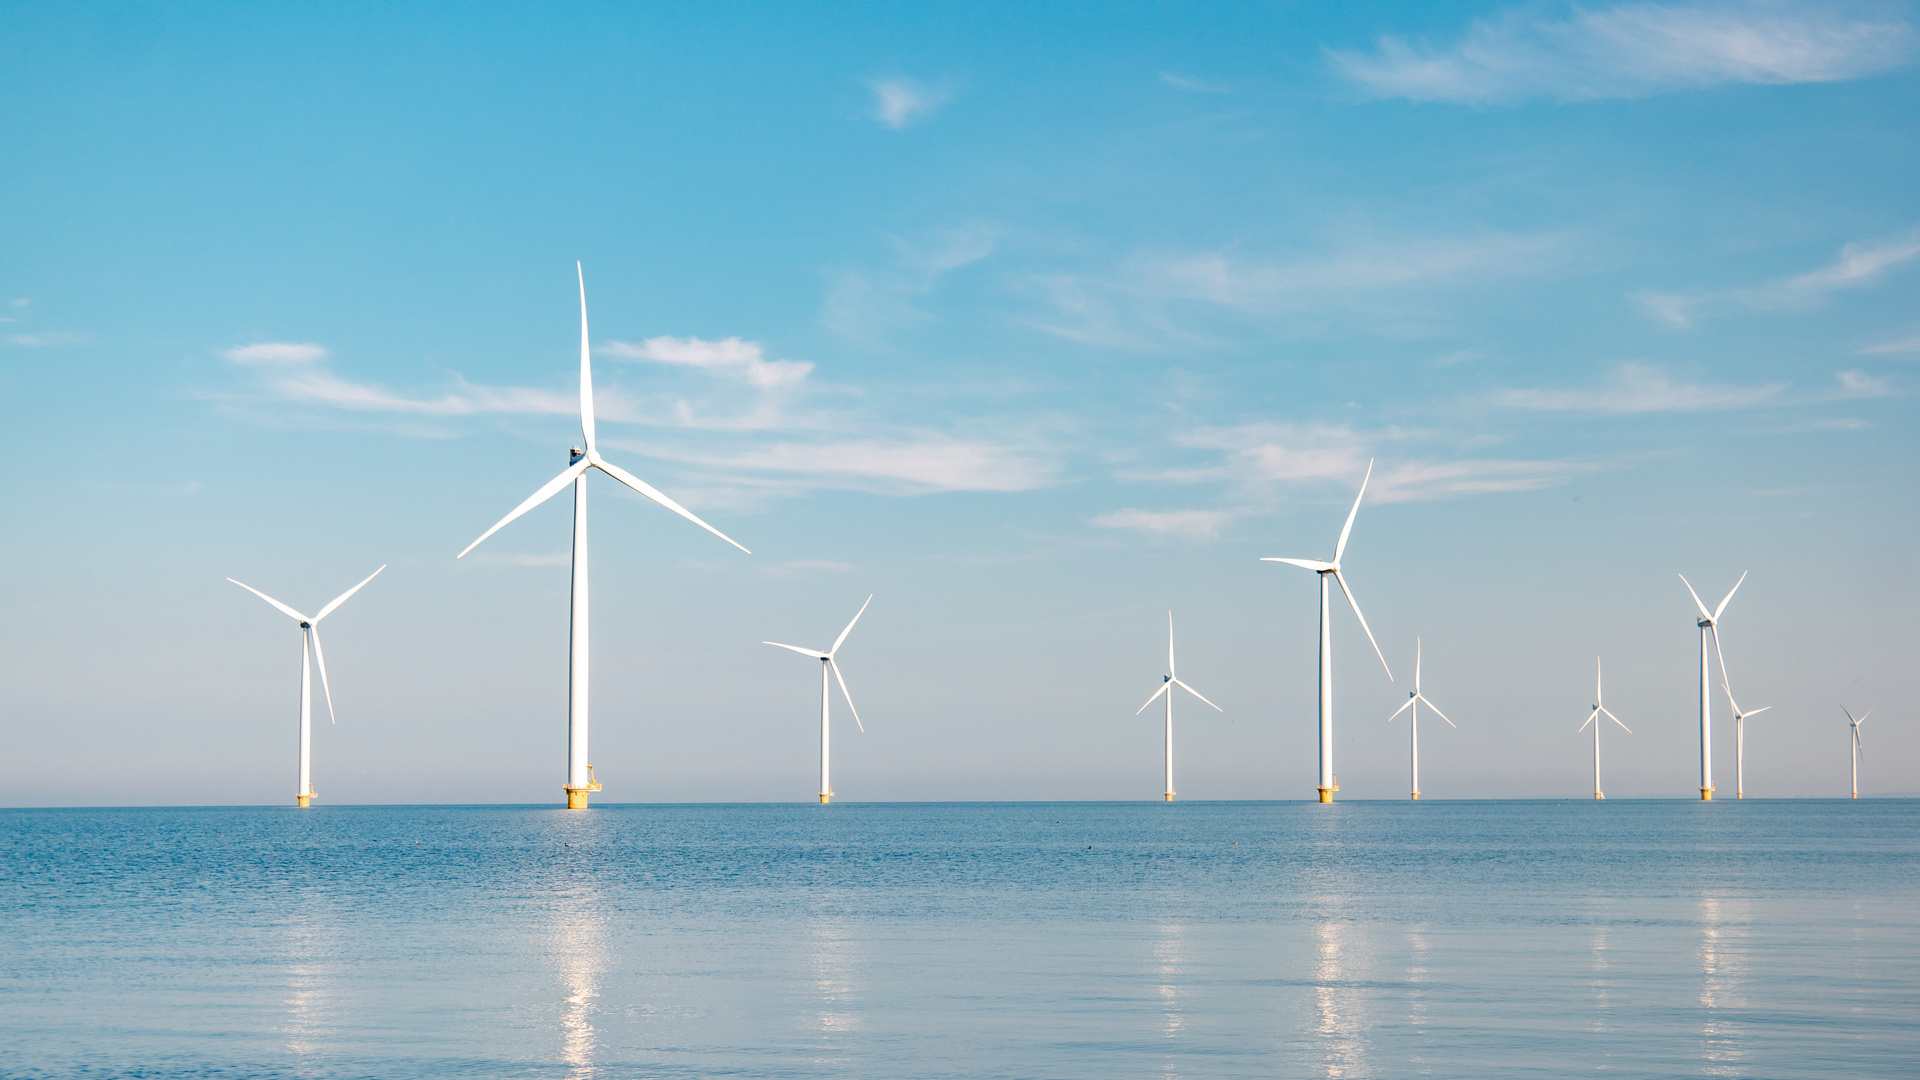 A new North Sea wind farm